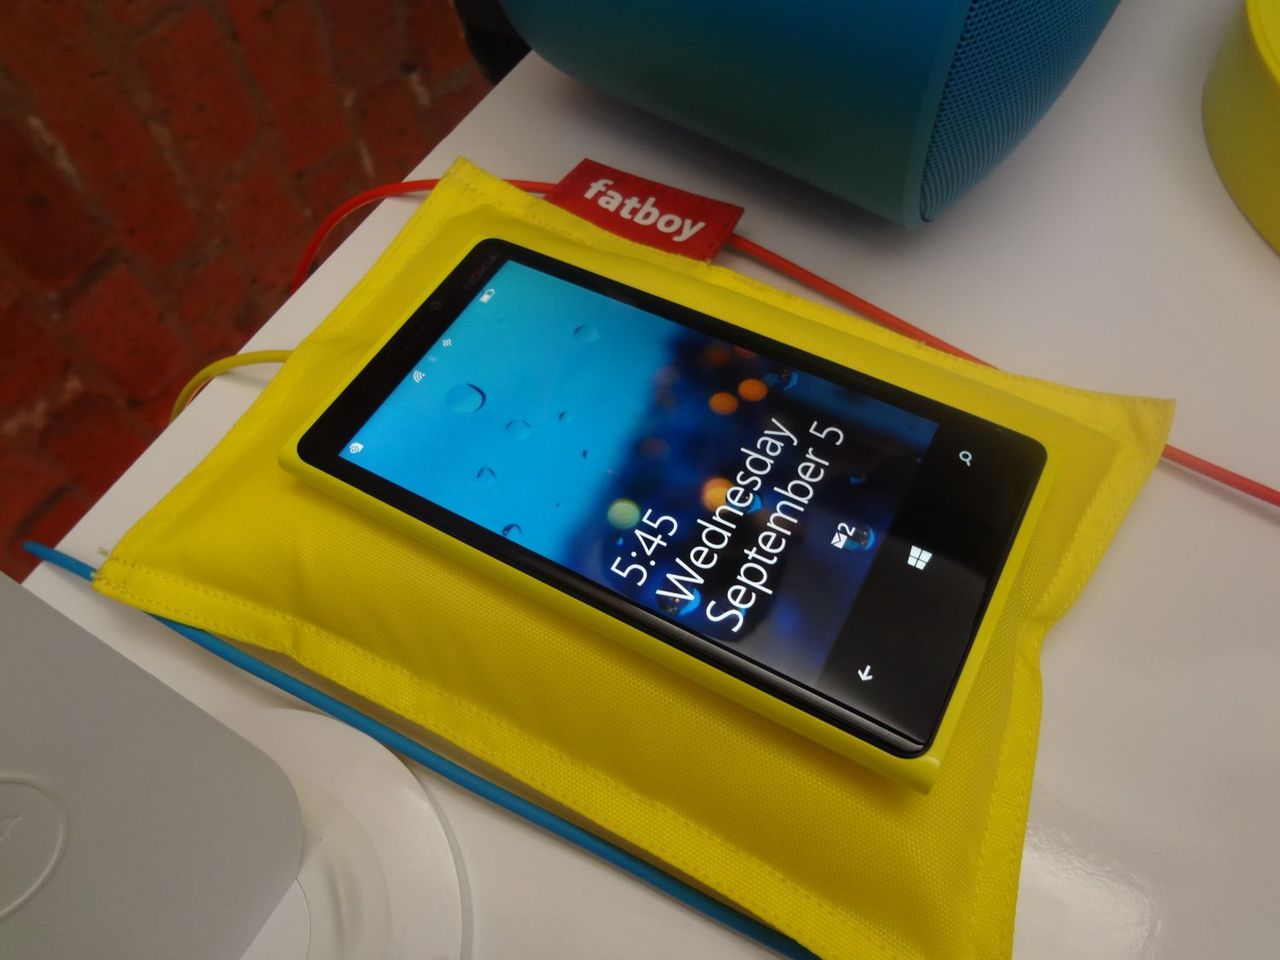 Nokia Lumia 920/820 dopiero po nowym iPhonie? Niedługo potem Lumie 720 i 620?